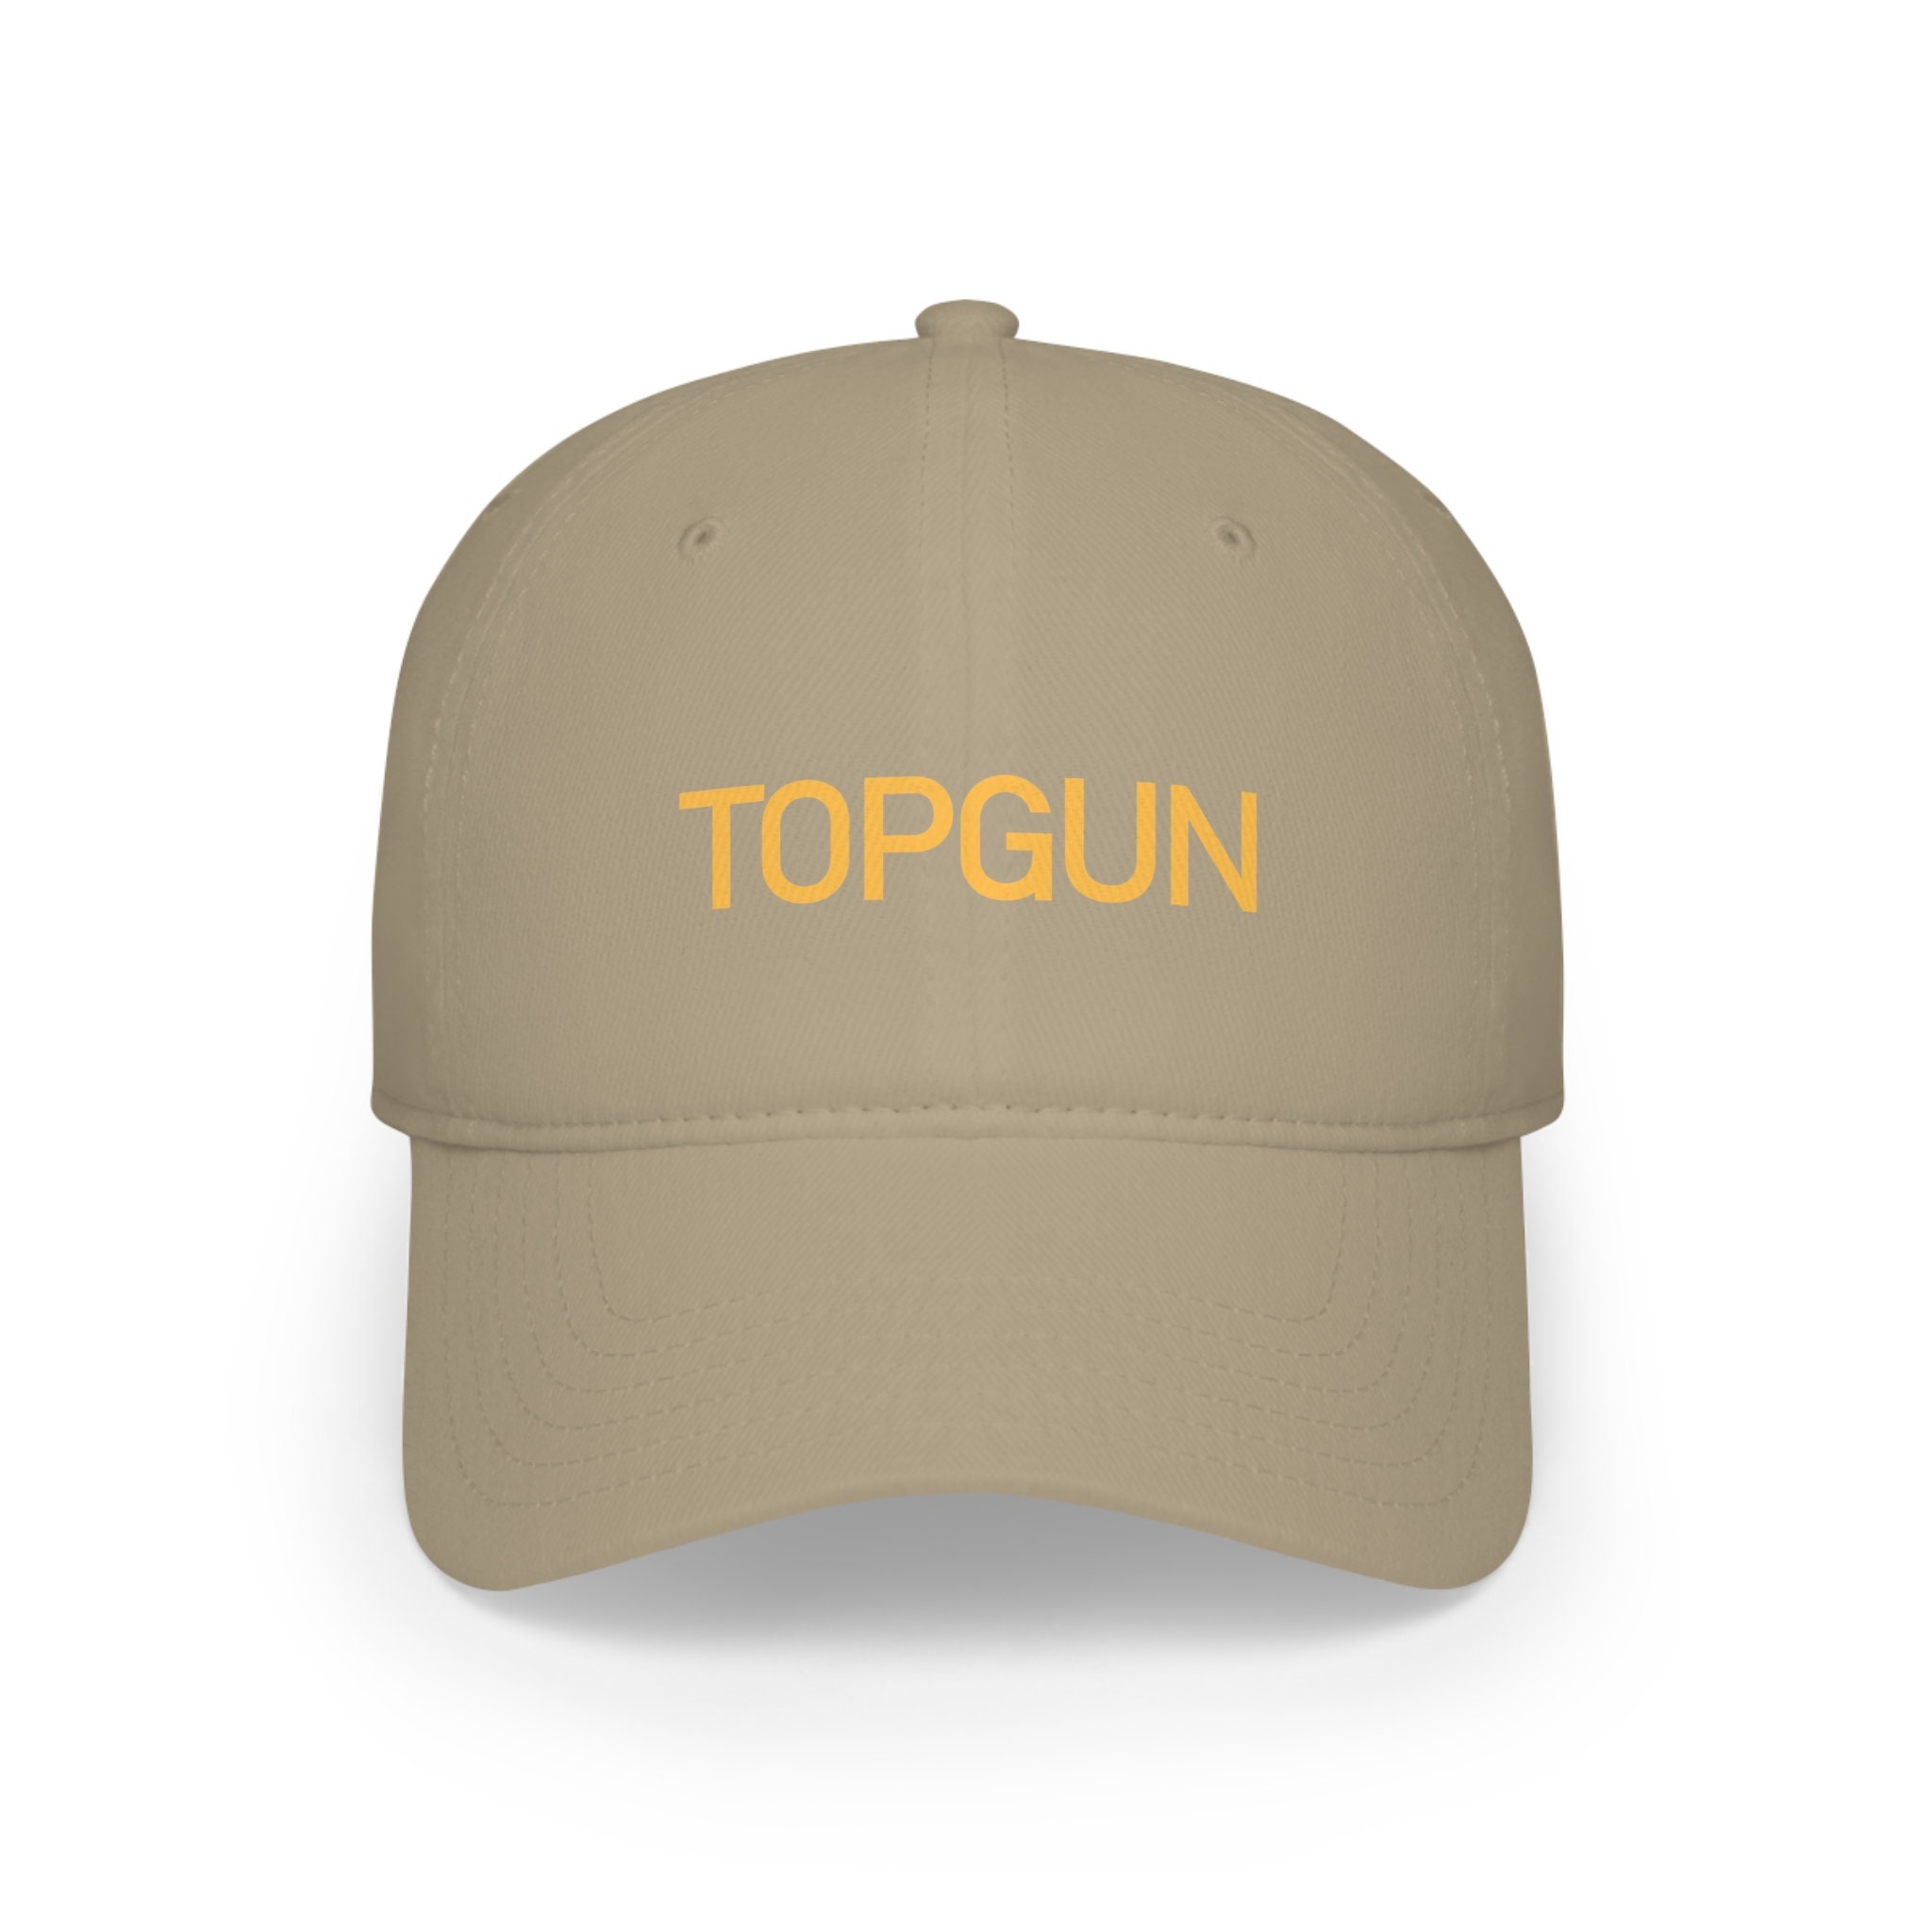 Topgun Cap - Etsy